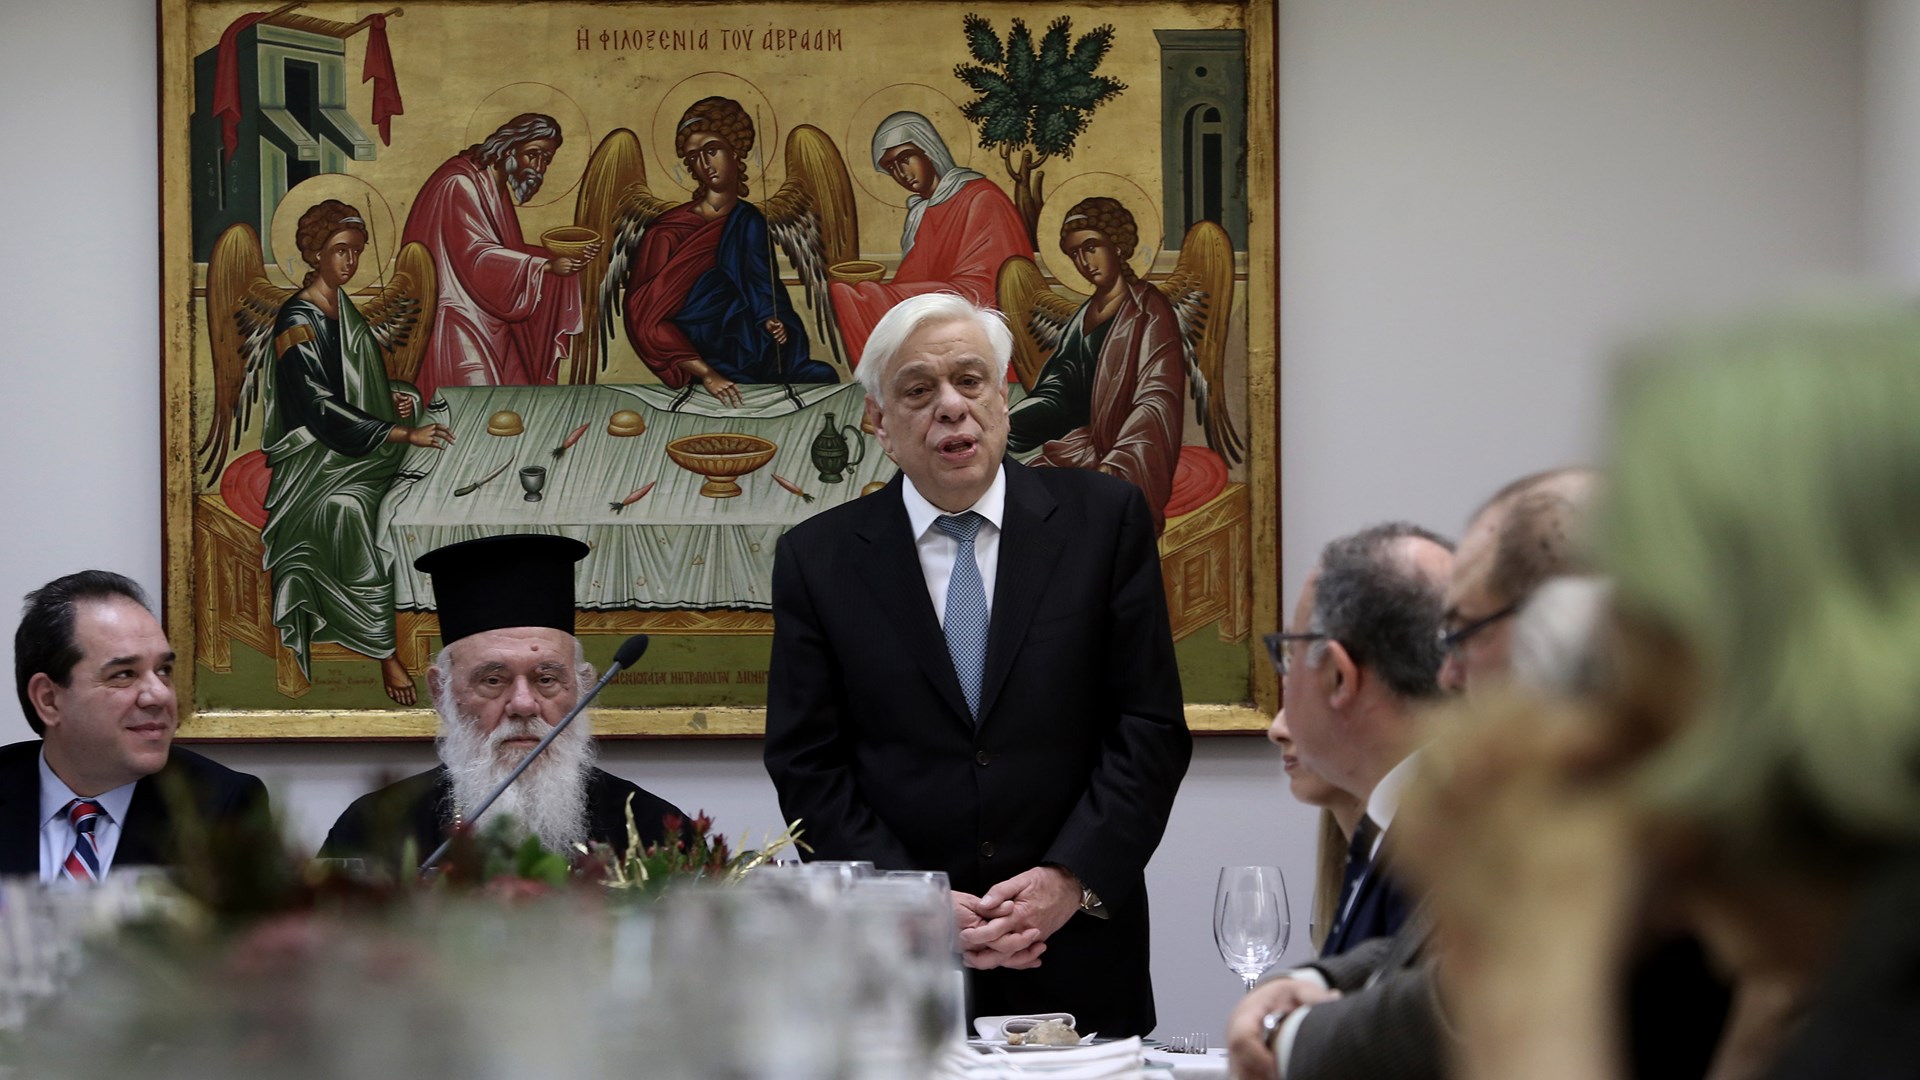 Ο Παυλόπουλος εξήρε τον ρόλο της Εκκλησίας, του Αρχιεπισκόπου και της «Αποστολής» στη στήριξη της ελληνικής κοινωνίας